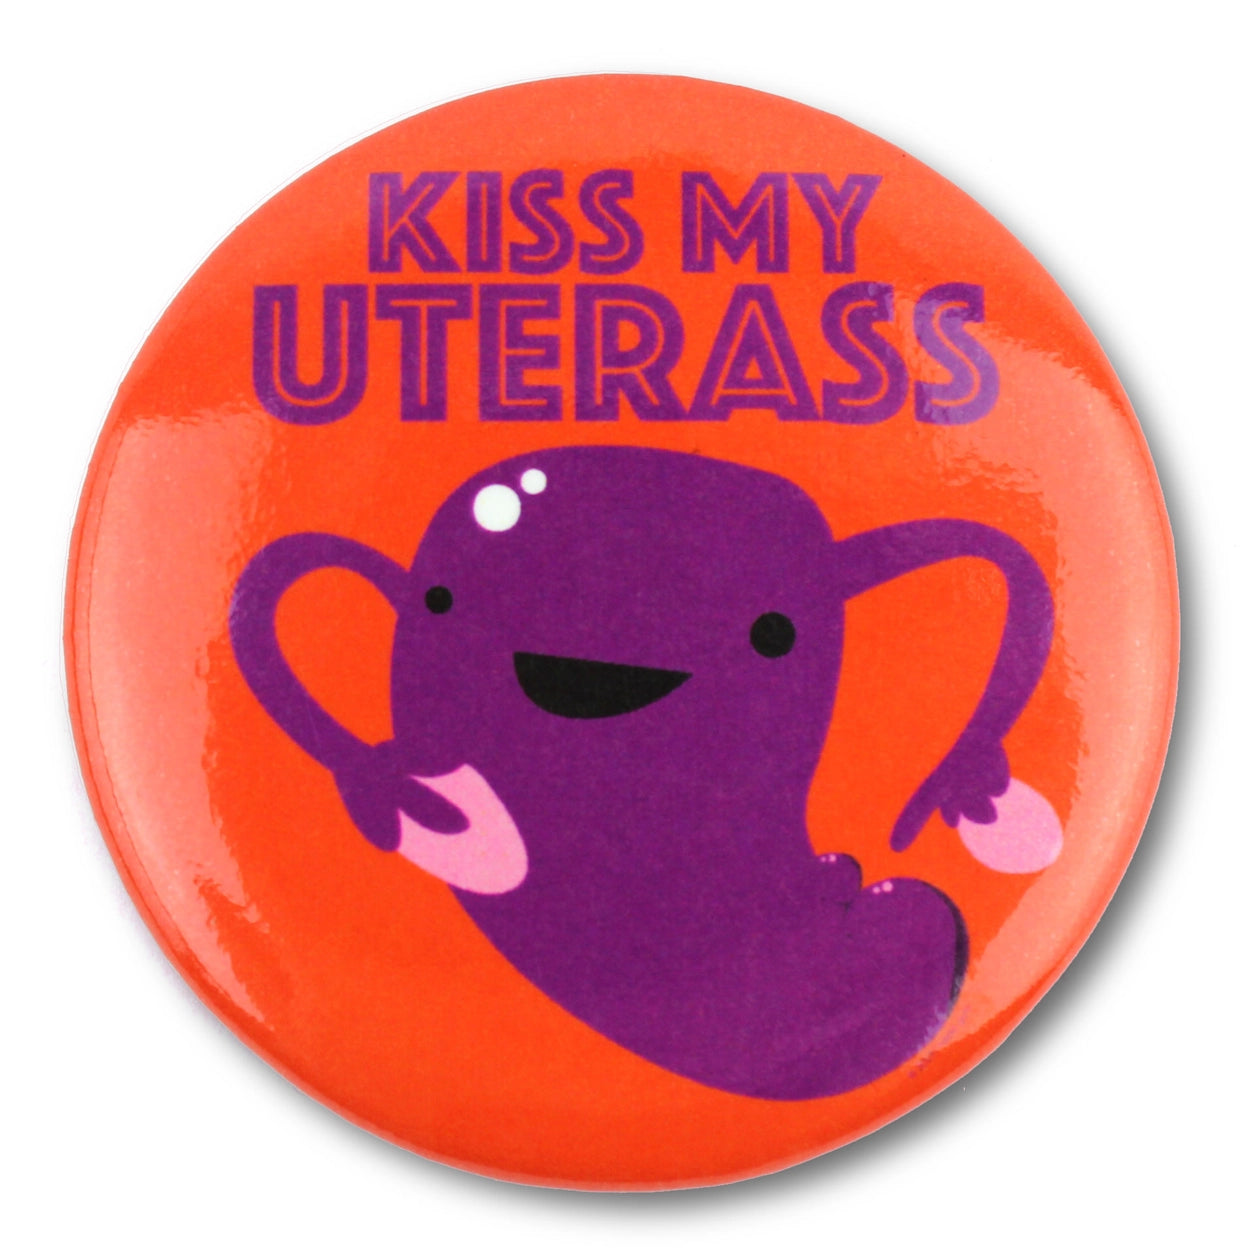 Magnet Uterus - Kiss My Uterass